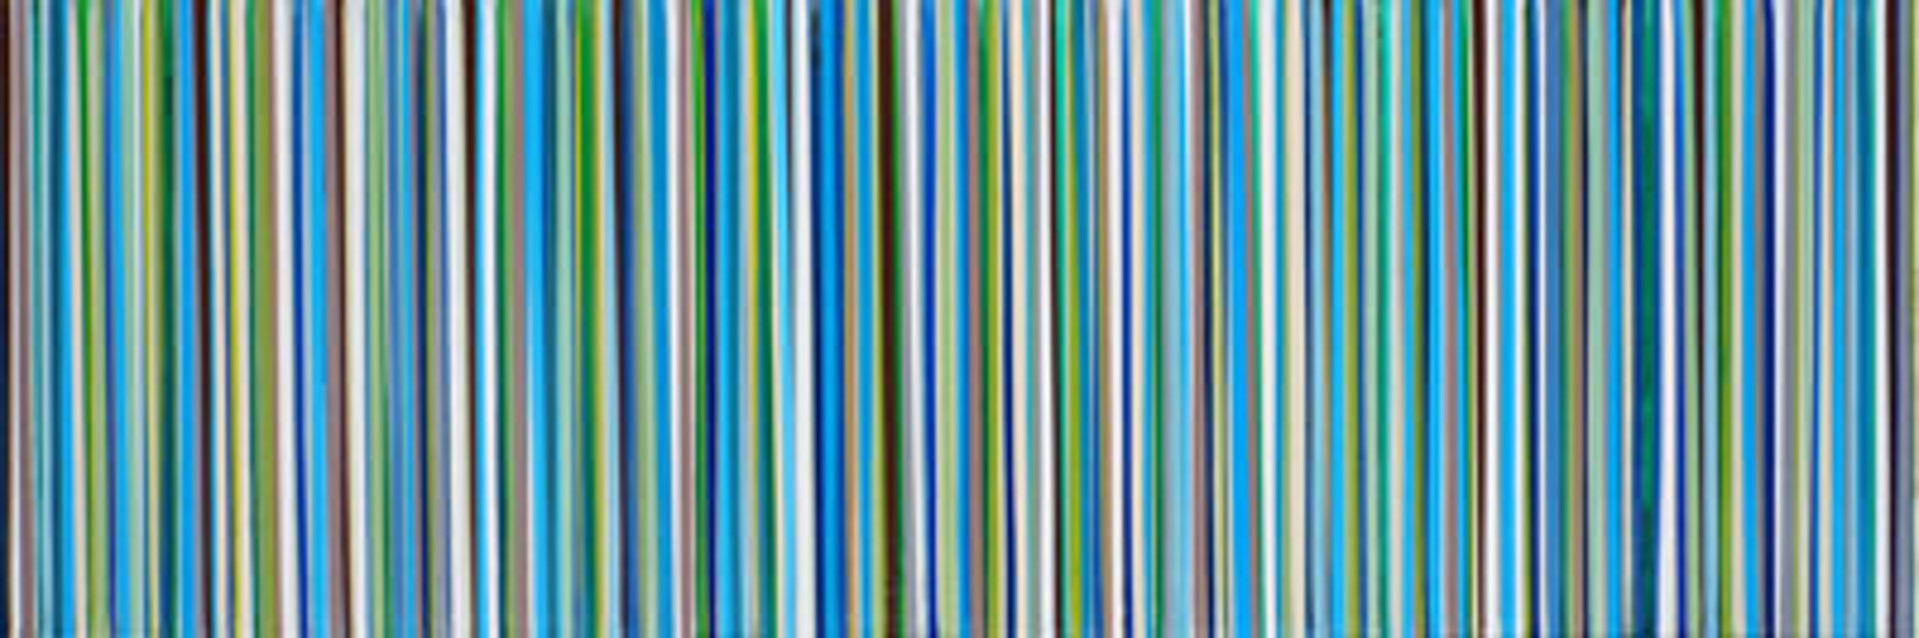 Teal Stripe II by Michael Hoffman